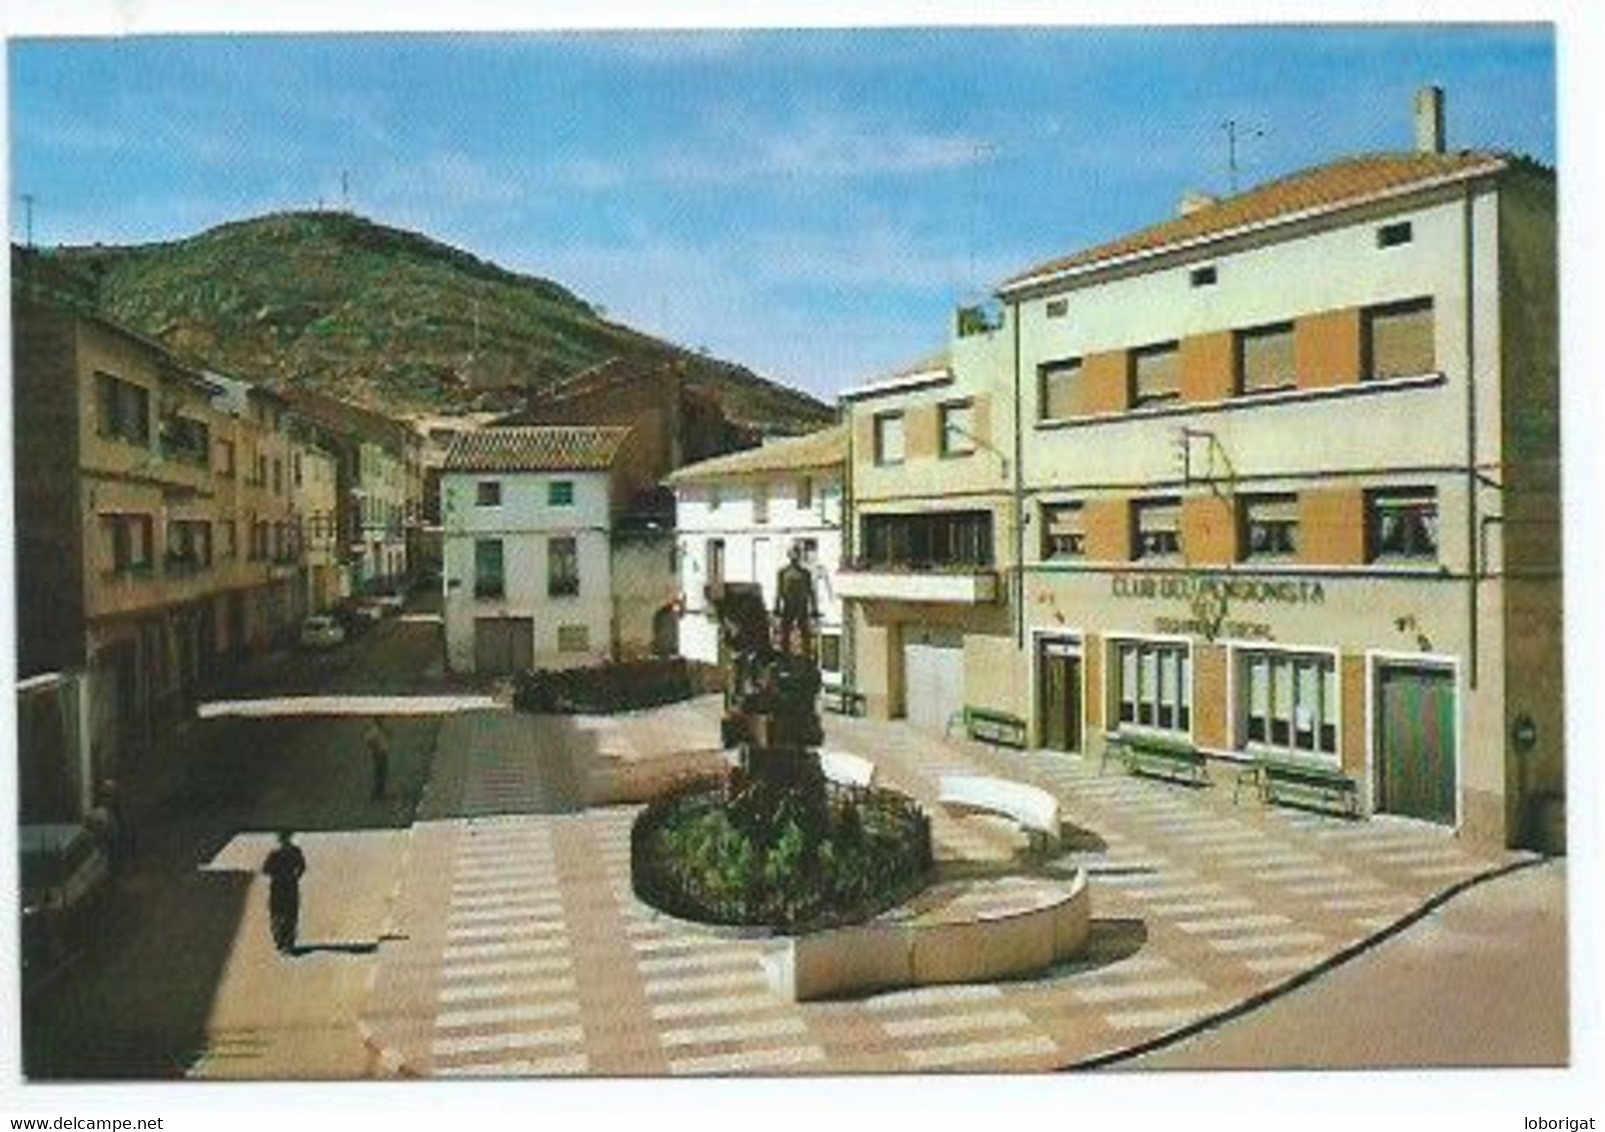 PLAZA DEL REGALLO / REGALLO SQUARE / PLACE DU REGALLO.- ANDORRA - TERUEL.- (ESPAÑA ). - Teruel